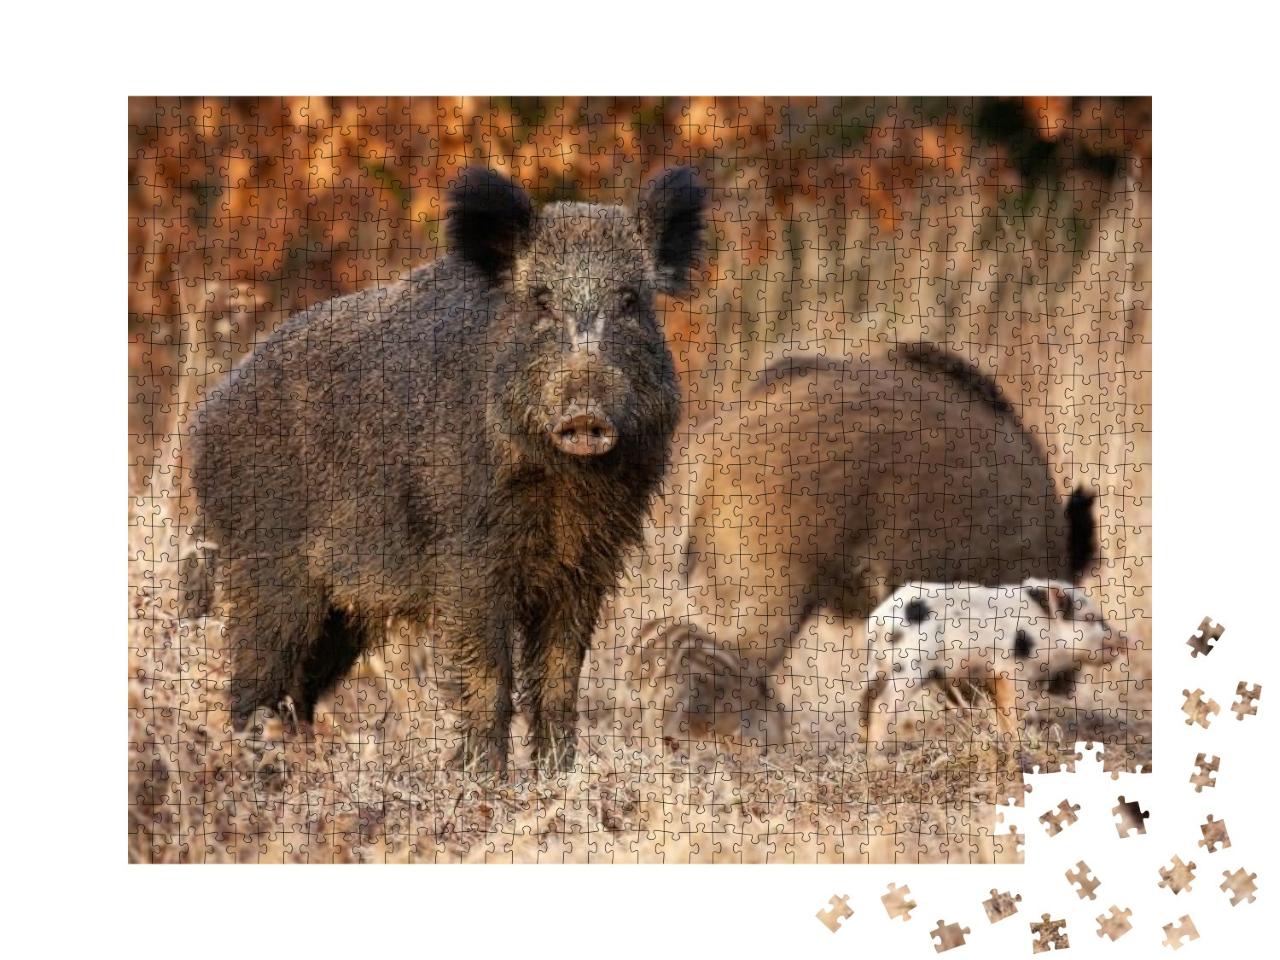 Puzzle 1000 Teile „Wildschwein, das seine jungen Frischlinge beschützt“